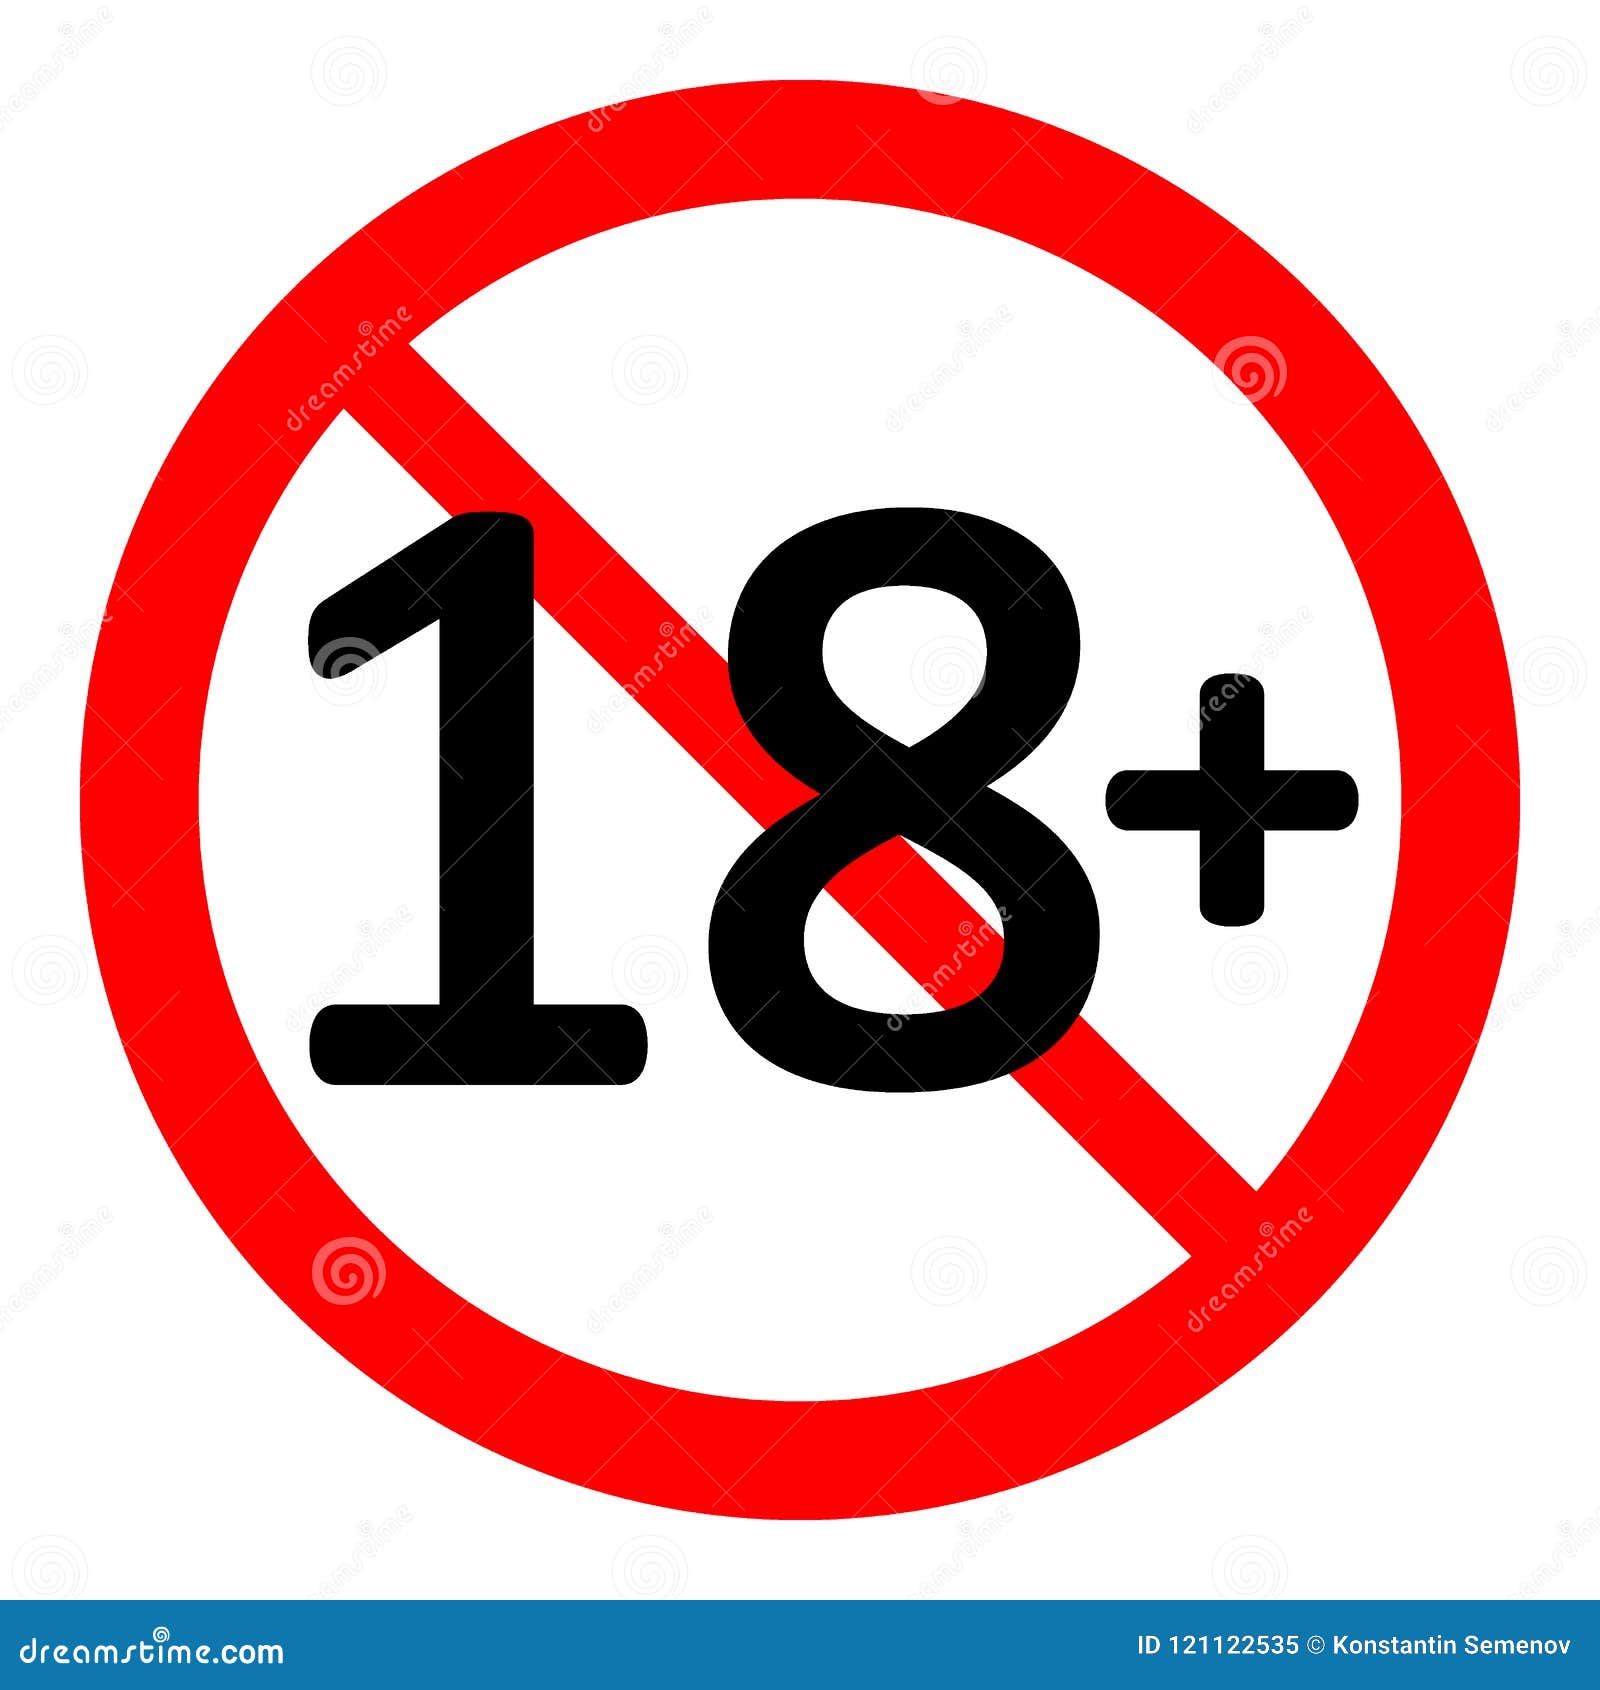 18 Ограничение. Знак ограничения температуры на этикетке. Картинка Советская с запретом 18 +.